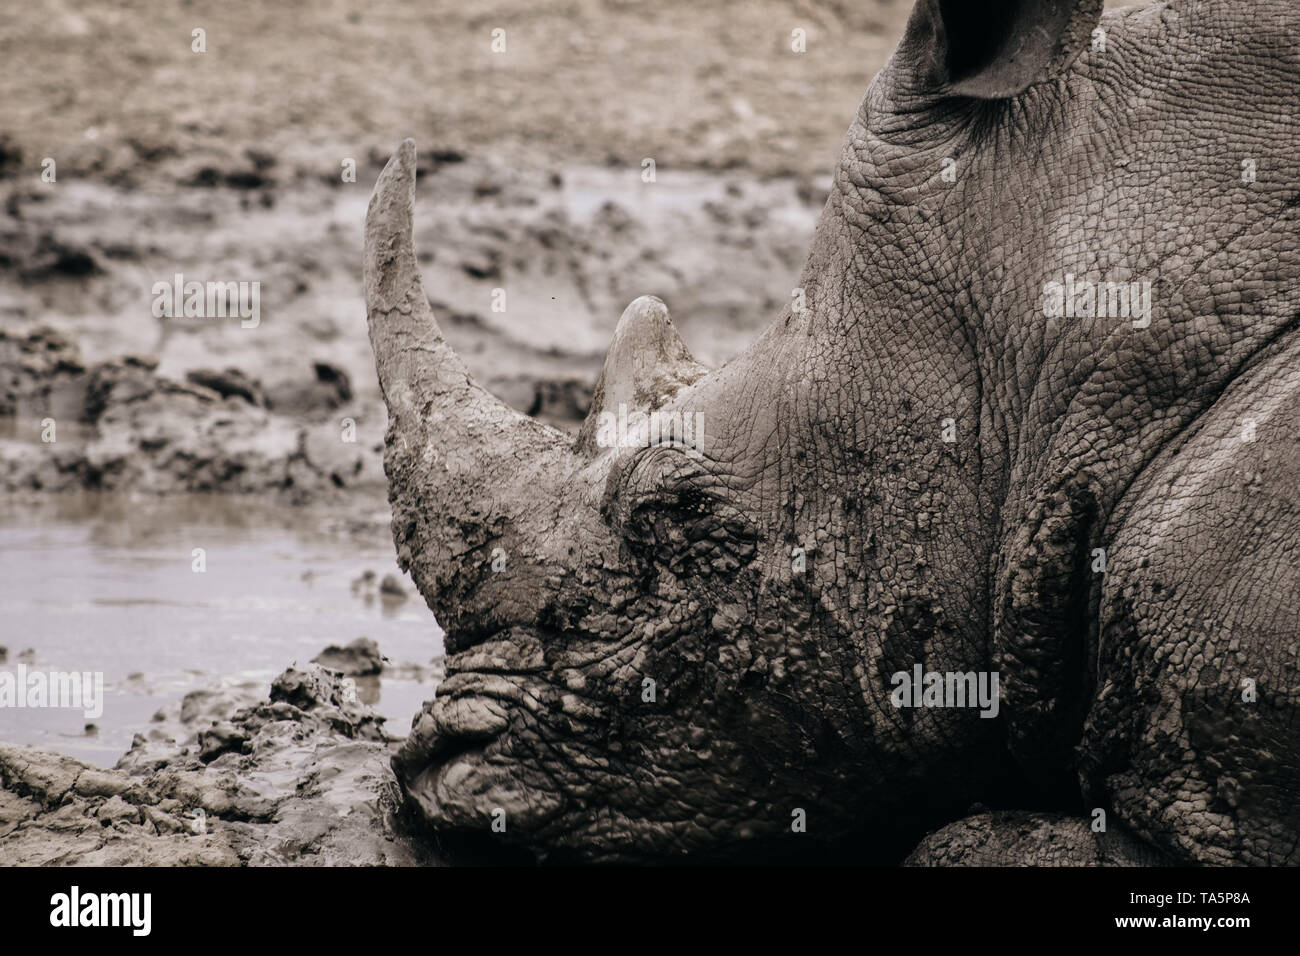 Le rhinocéros blanc couché dans la boue en Afrique. Banque D'Images